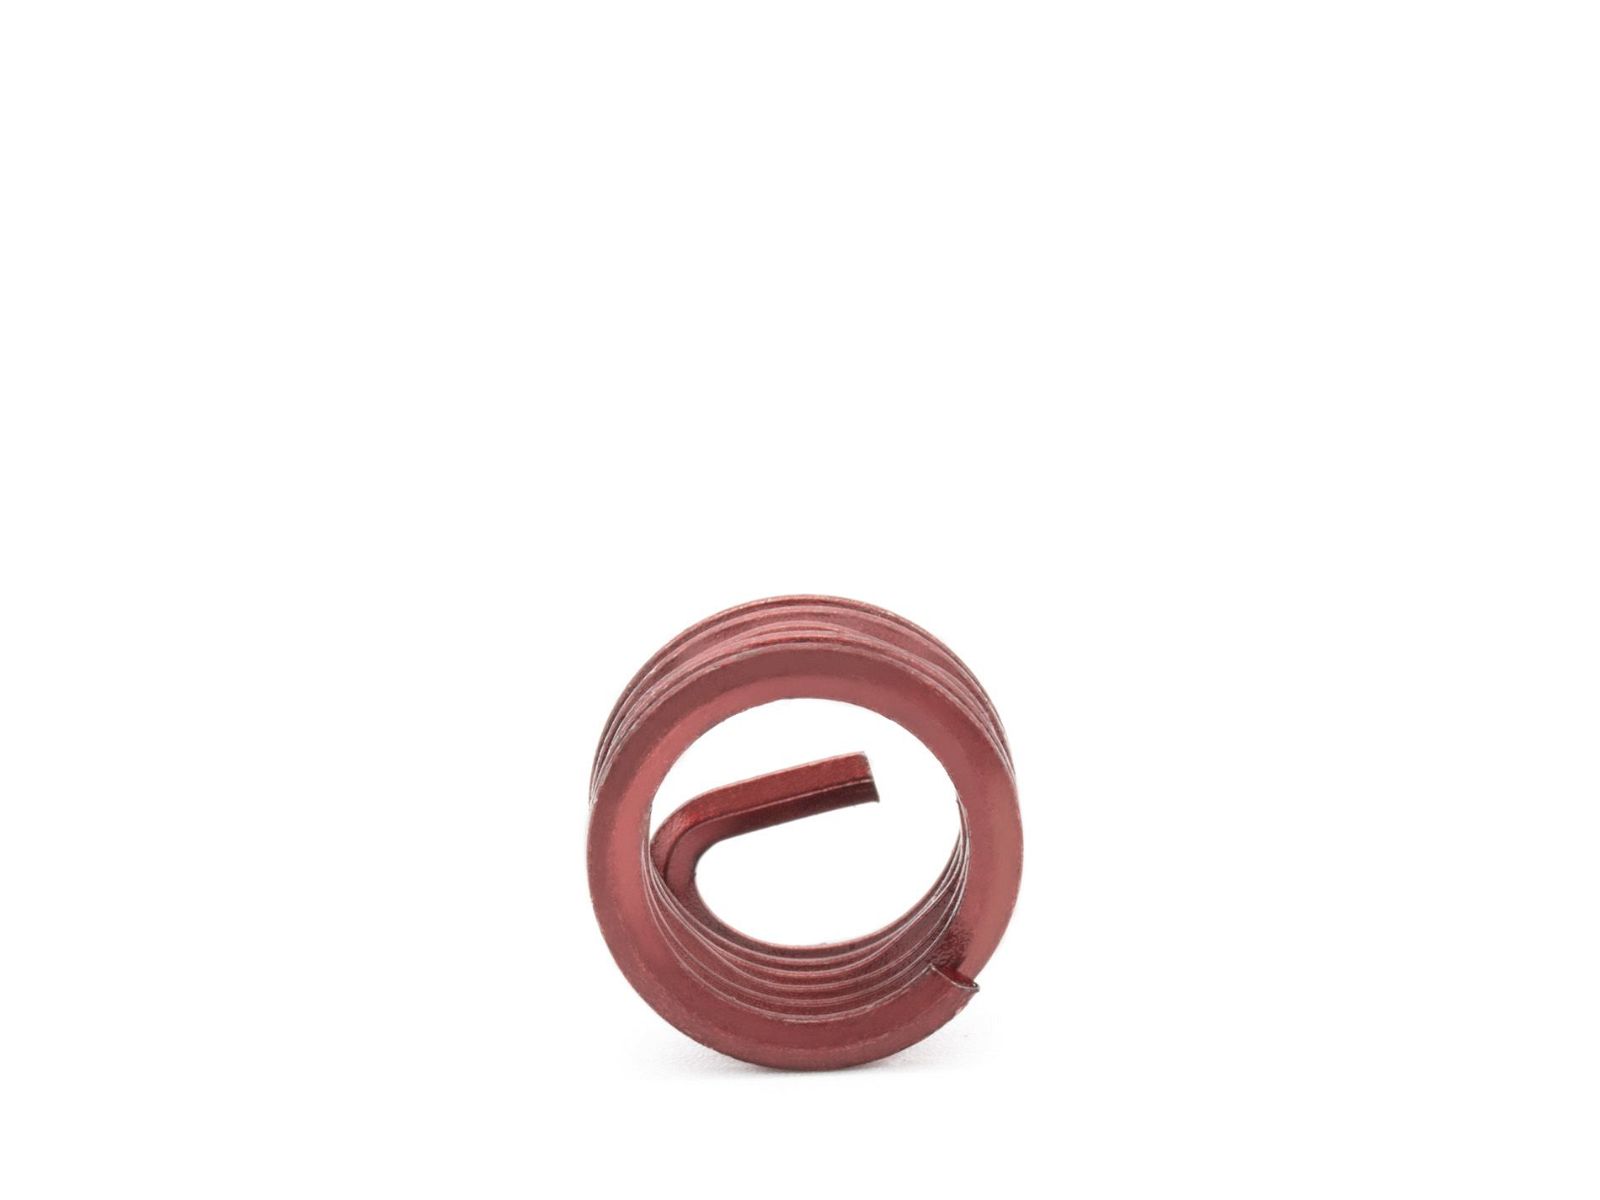 BaerCoil Wire Thread Inserts M 3.5 x 0.6 - 1.0 D (3.5 mm) - screw grip (screw locking) - 100 pcs.